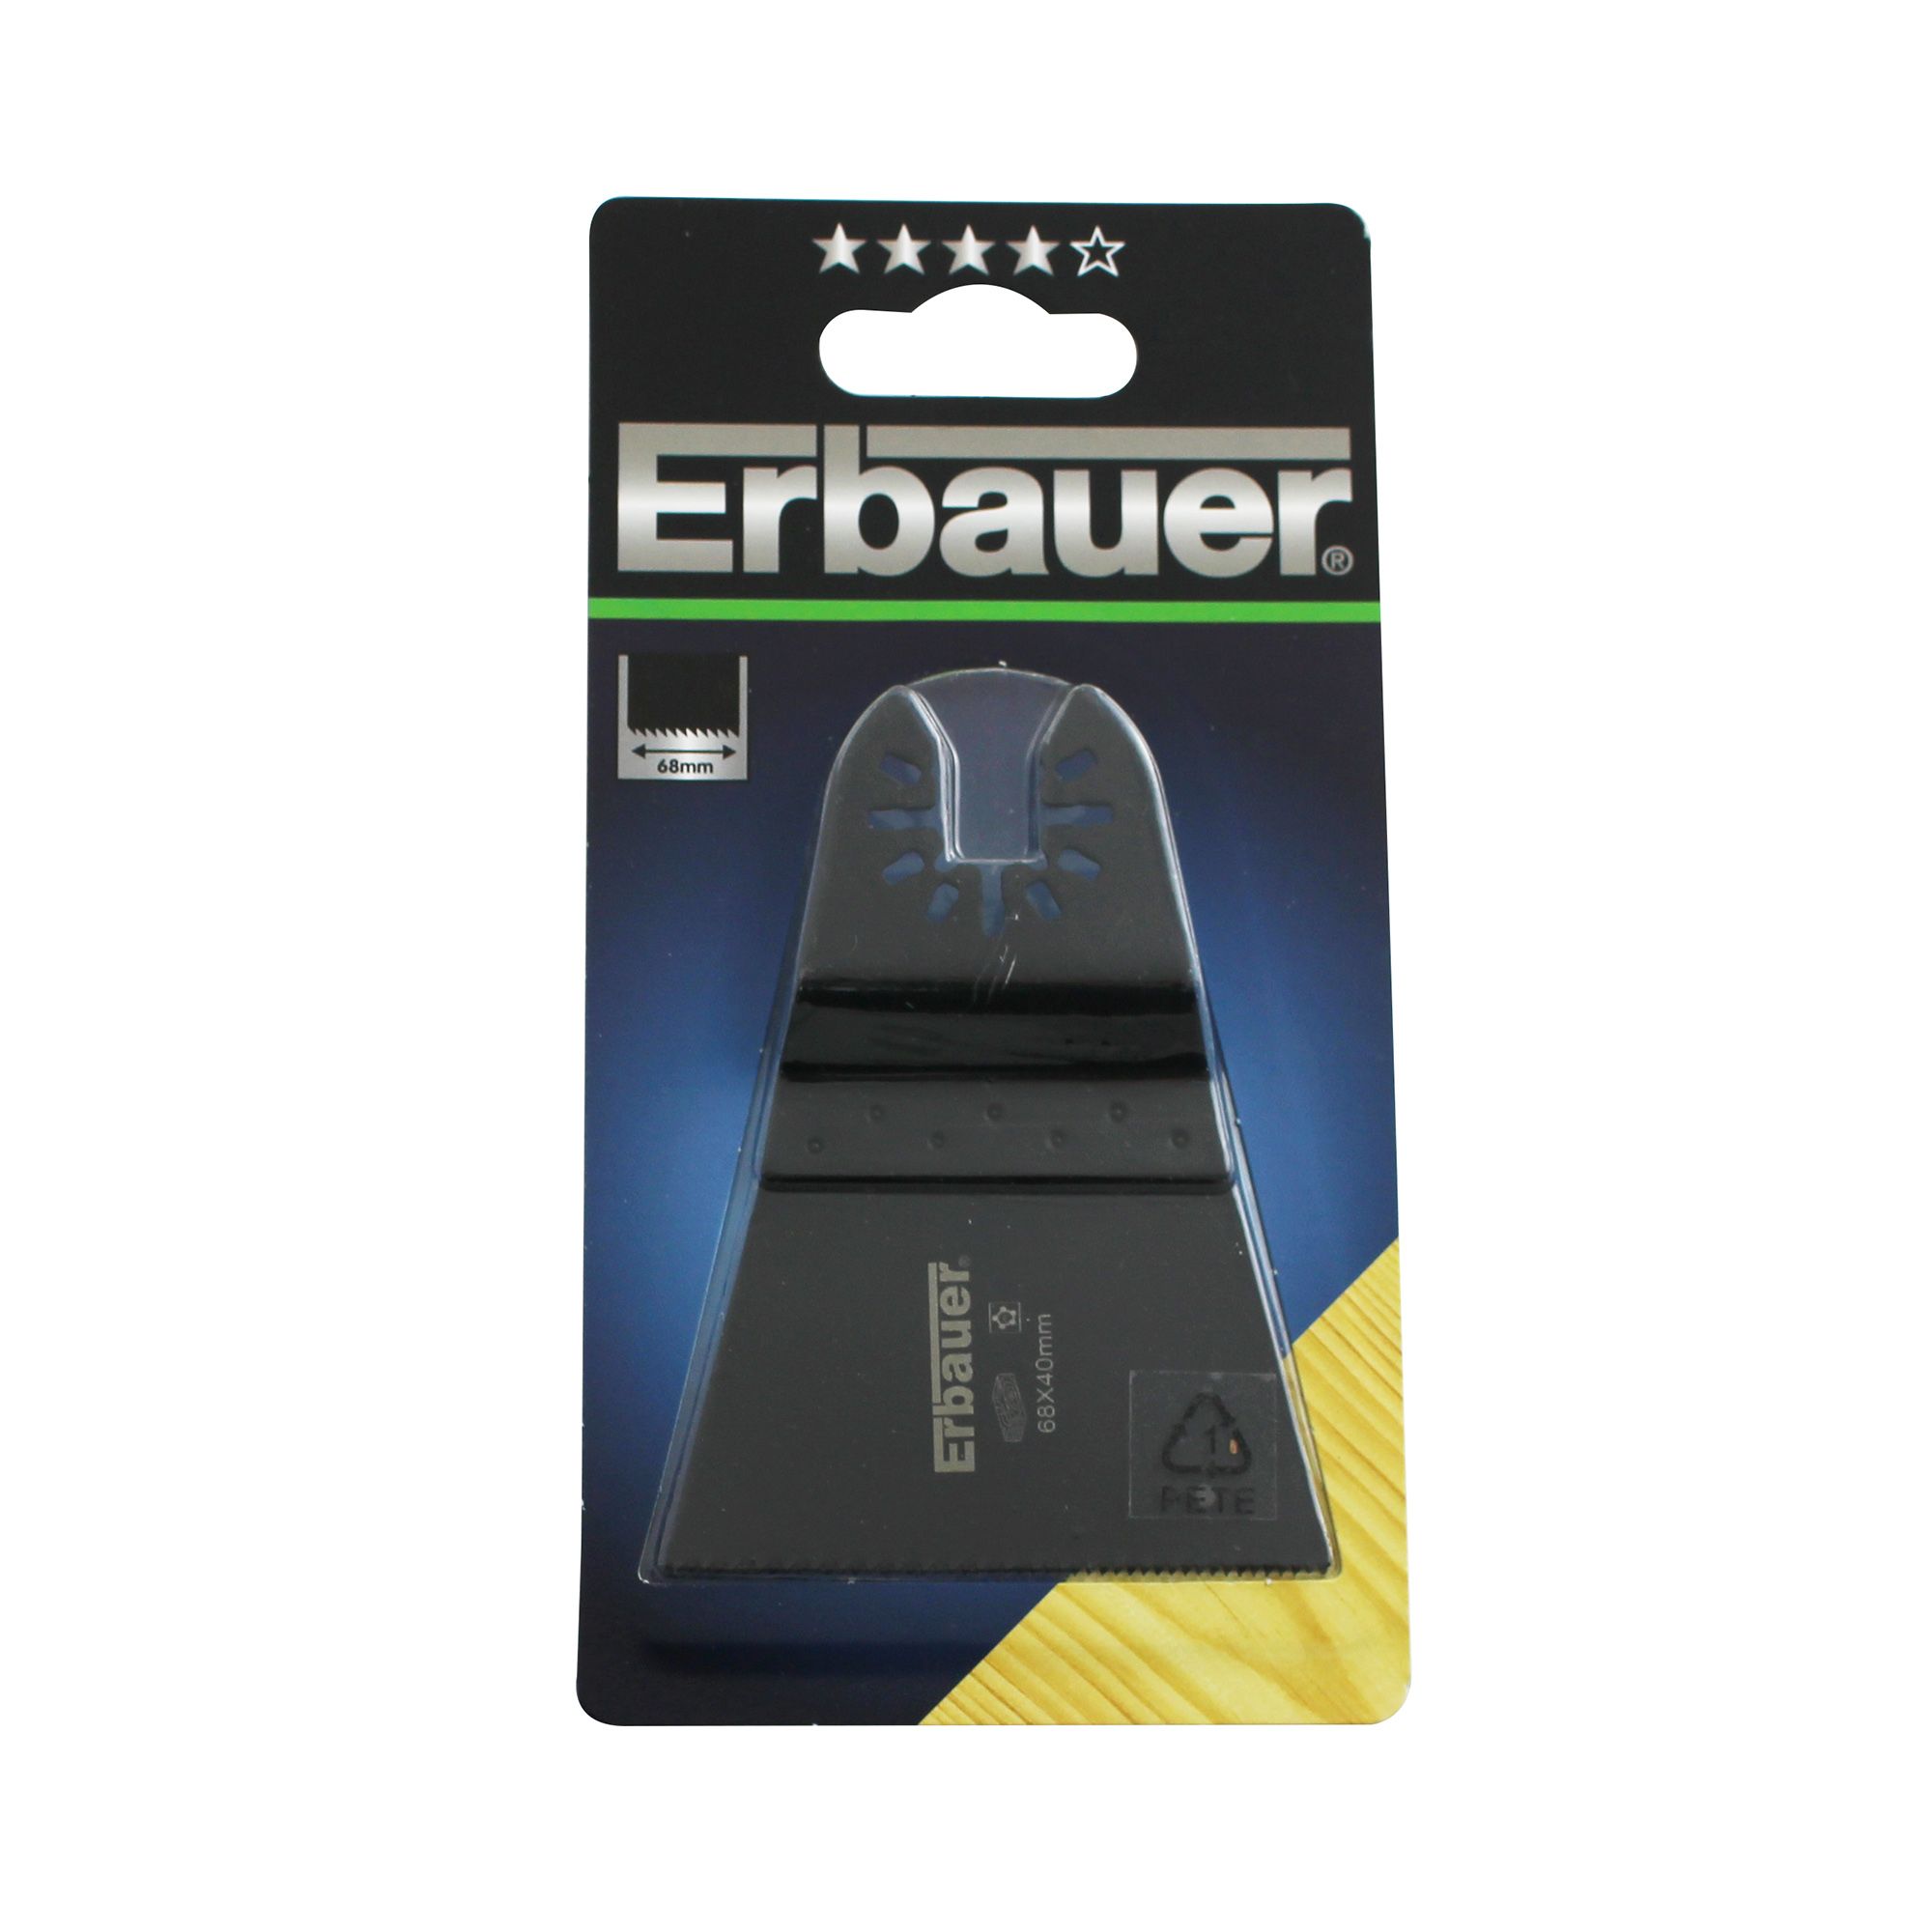 Erbauer Plunge cutting blade (Dia)68mm MLT53814